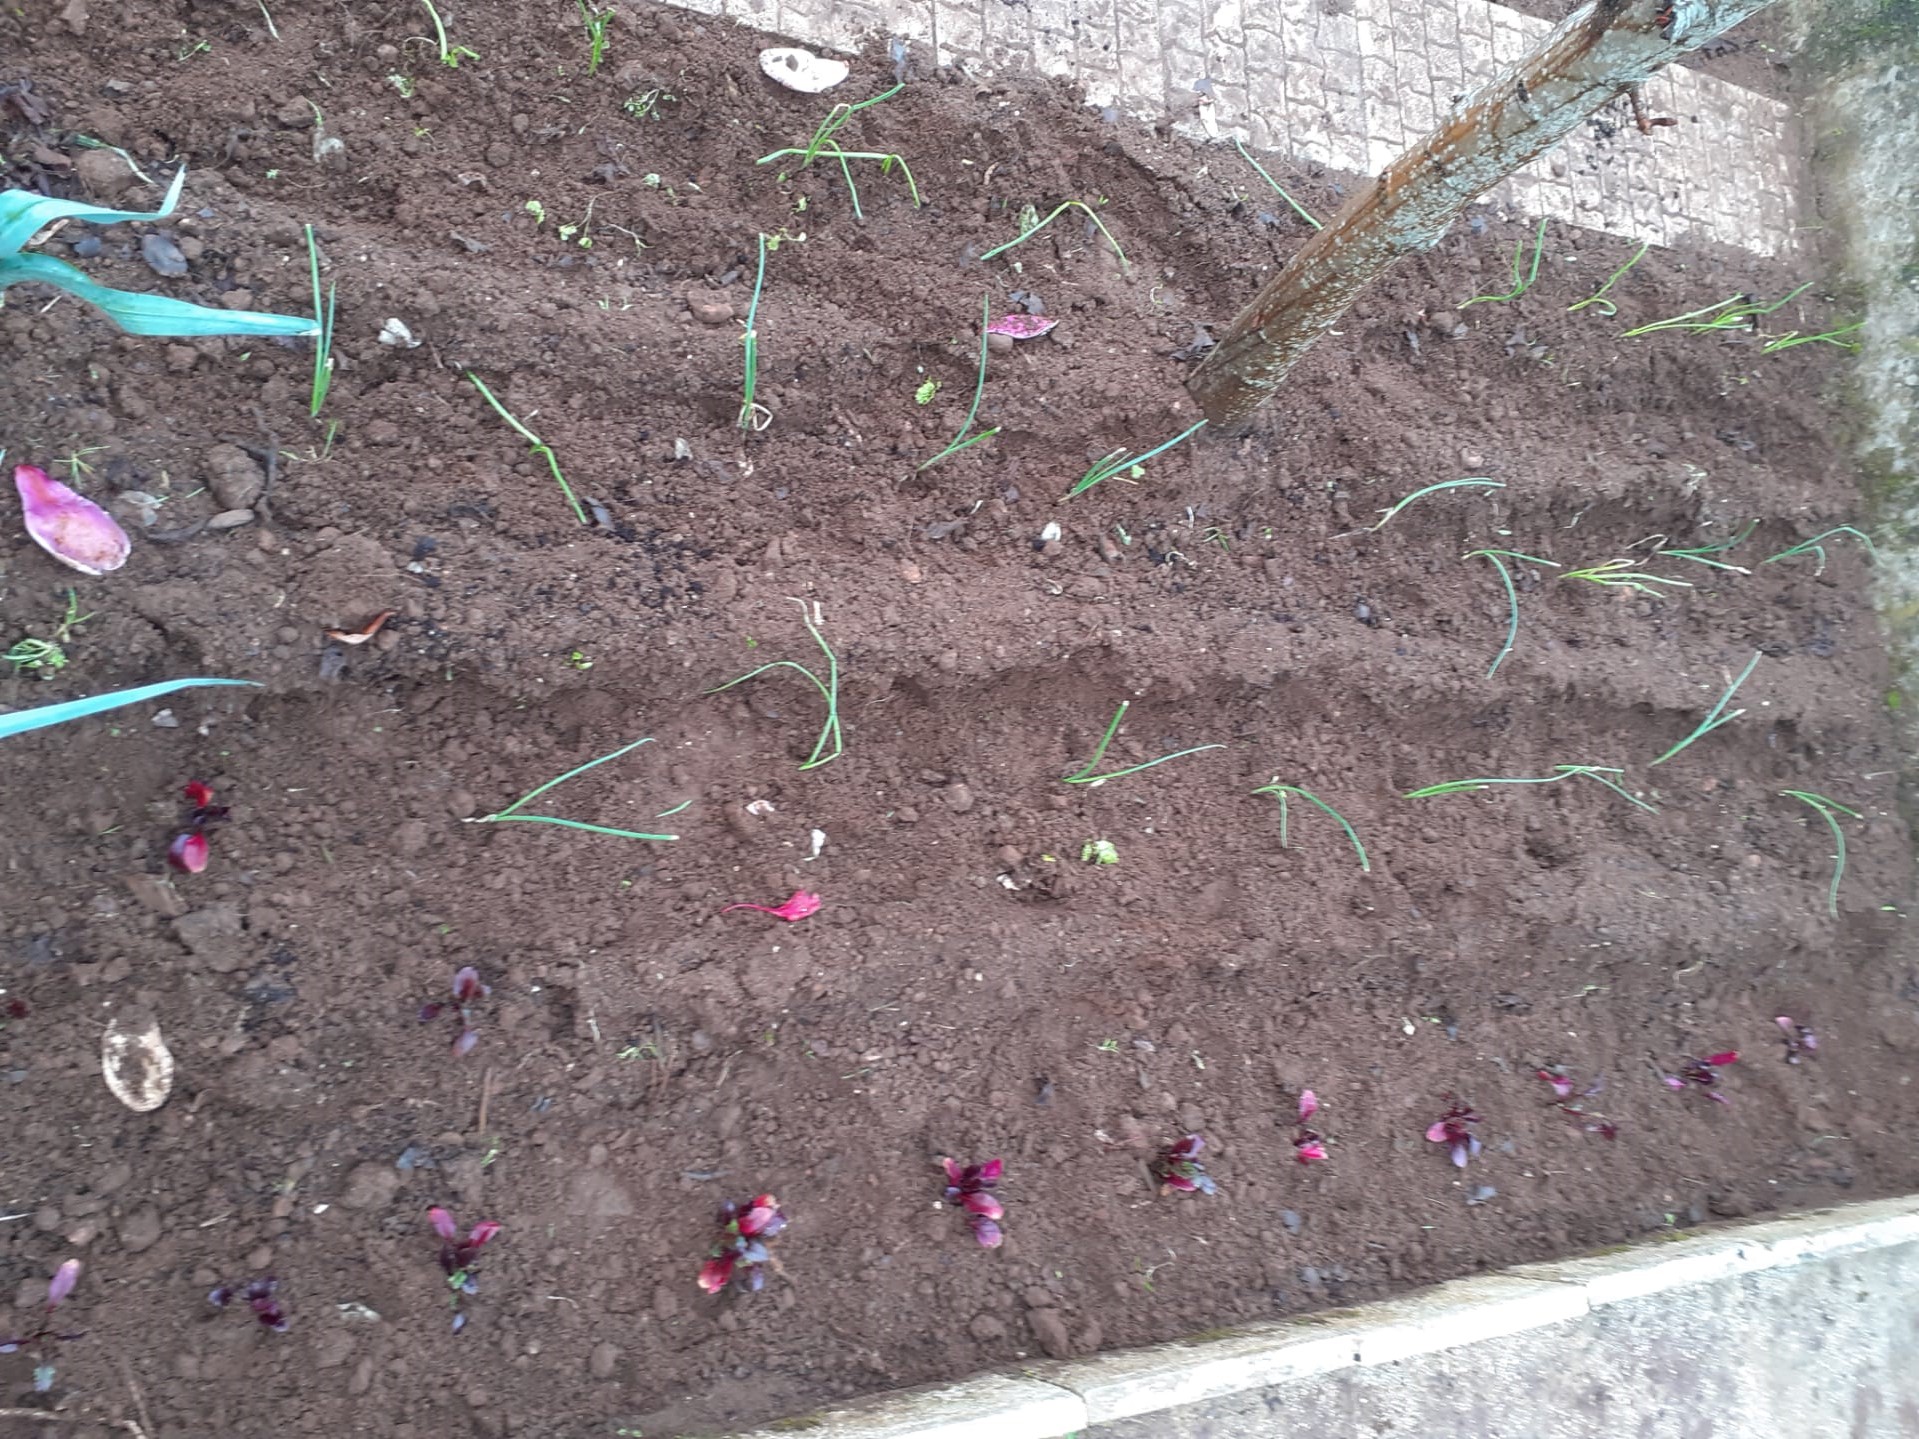 Plantaram-se couves, alfaces, cenouras, beterrabas, coentros, cebolas.
Semearam-se batatas e favas.